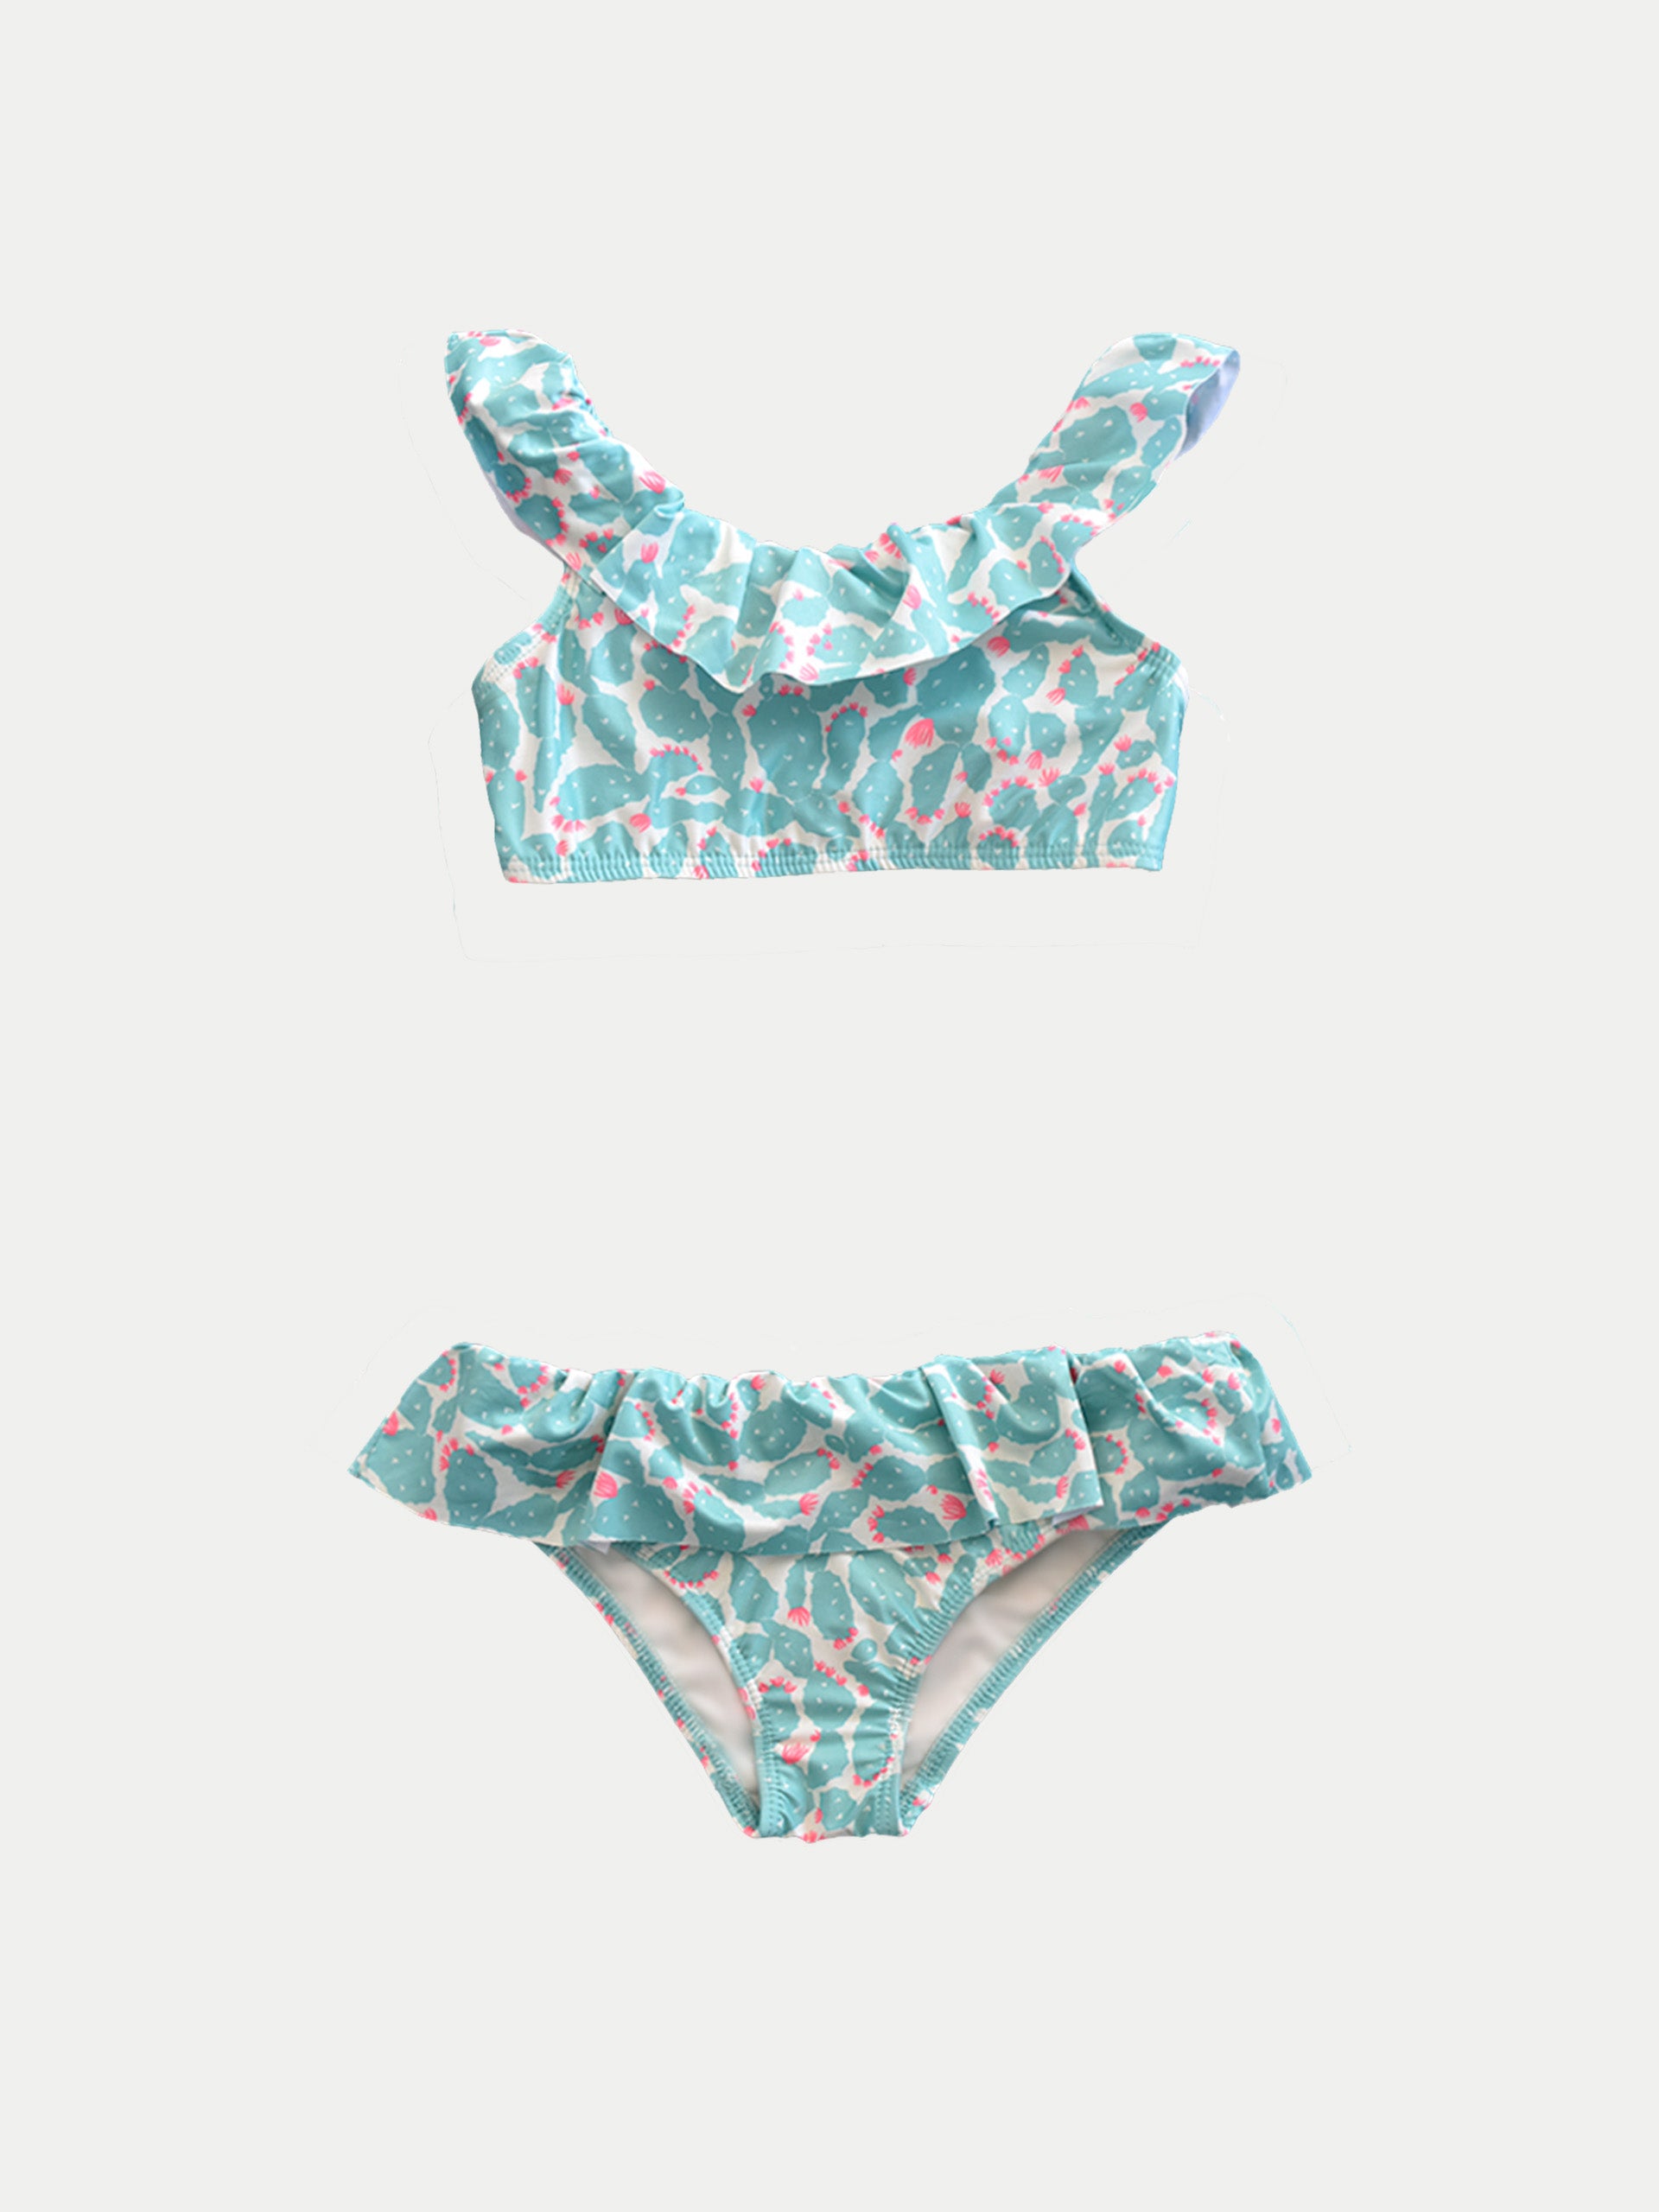 ‘Cactus Aqua’ Girls Swimwear by 98 Coast Av.